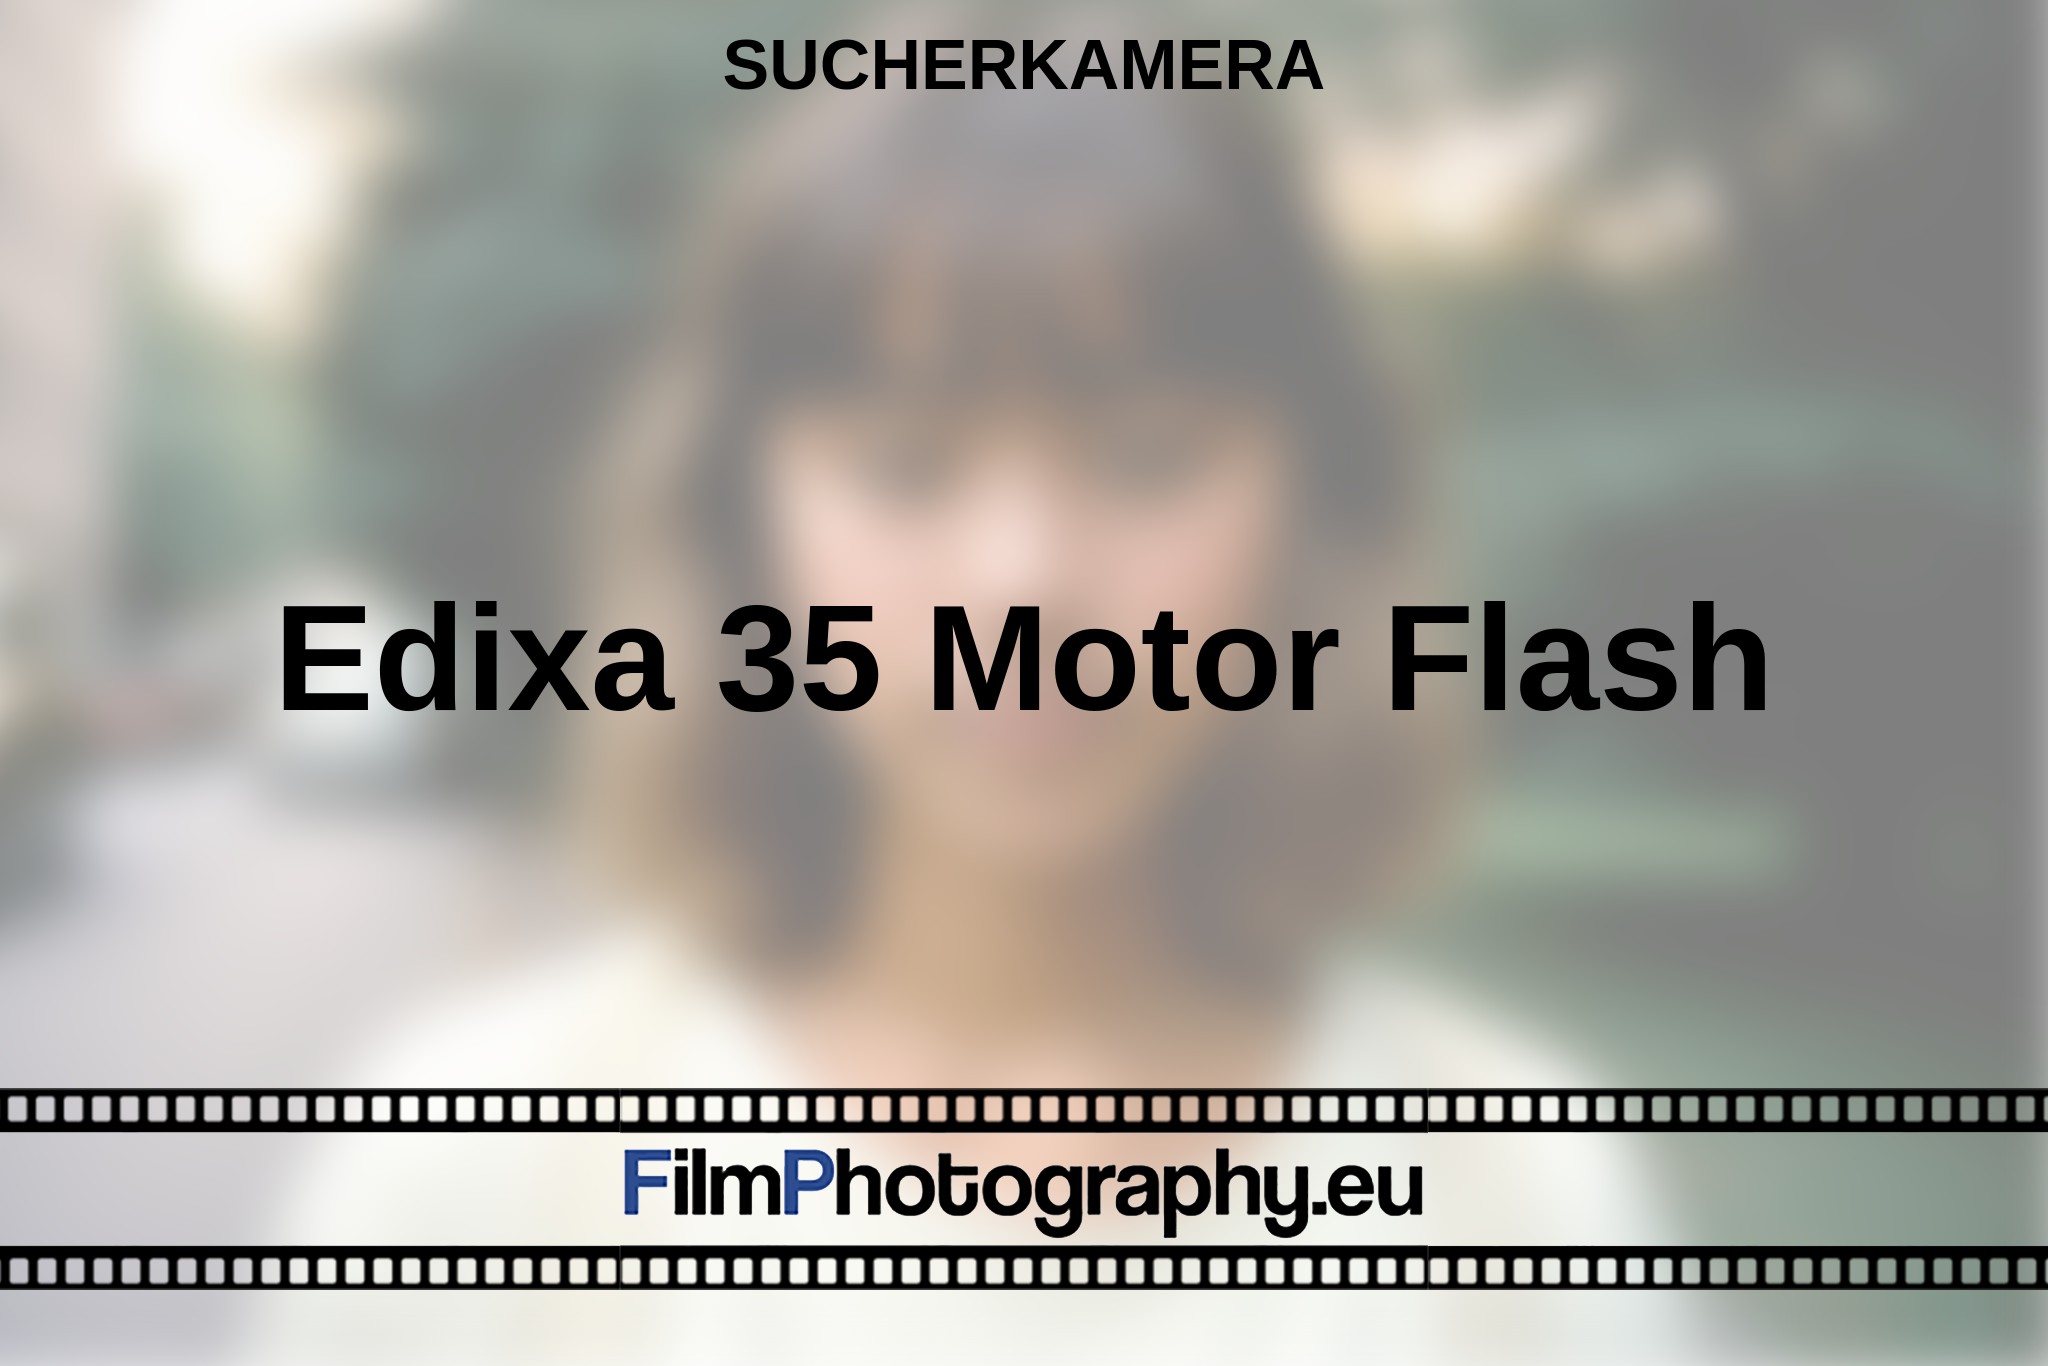 edixa-35-motor-flash-sucherkamera-bnv.jpg